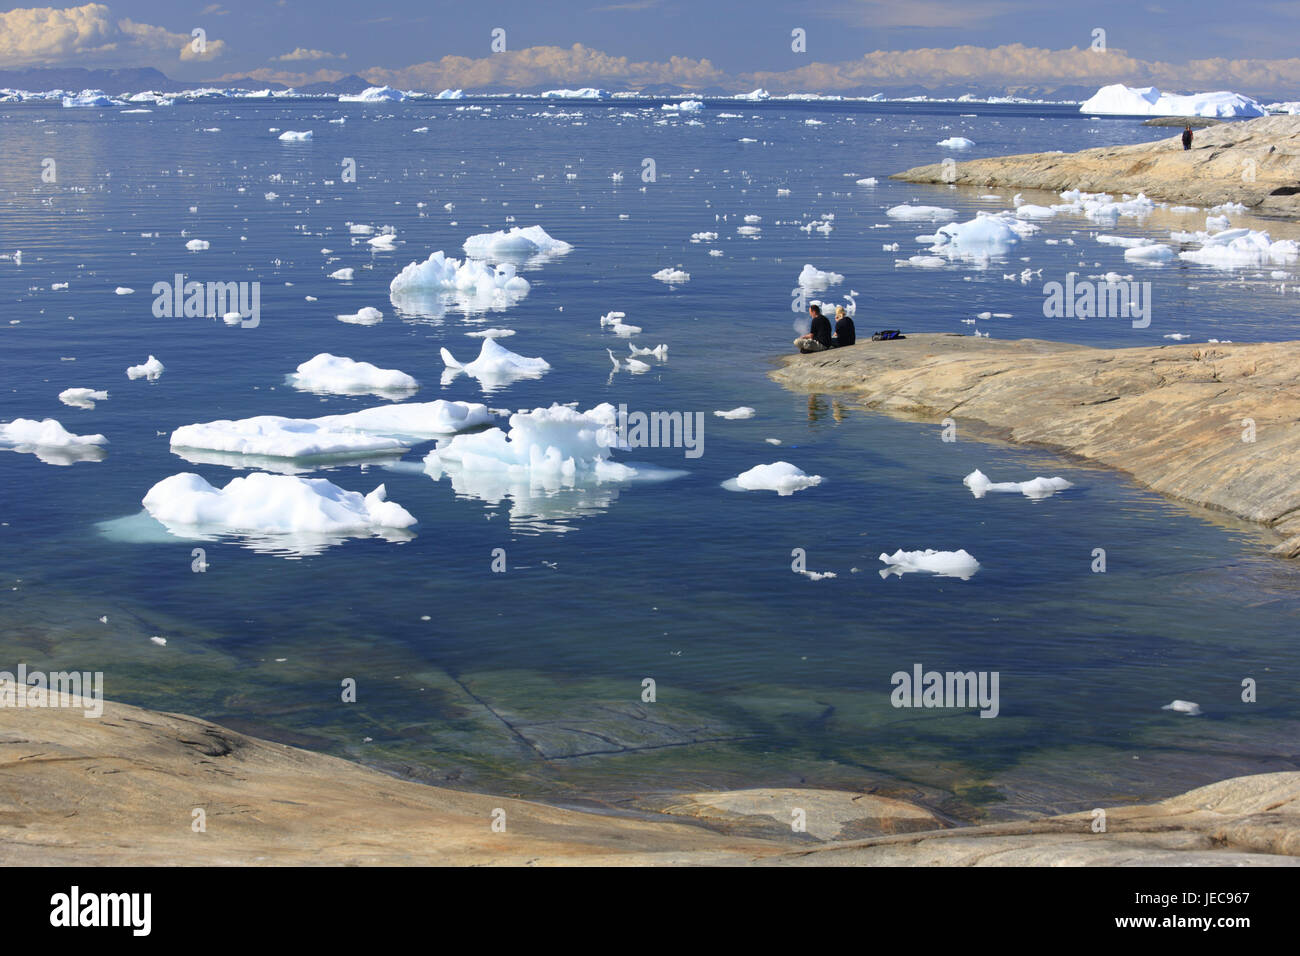 La Groenlandia, Discoteca Bay, Ilulissat, Fjord, iceberg, floes, costa, rock, turistiche, nessun modello di rilascio, la Groenlandia occidentale, ghiaccio, ghiacciaio, l'Artico, estate, la deriva di ghiaccio del ghiacciaio di terminazione anormale, natura, cambiamenti climatici, bile costa, persona, turismo, visualizzare larghezza, distanza Foto Stock